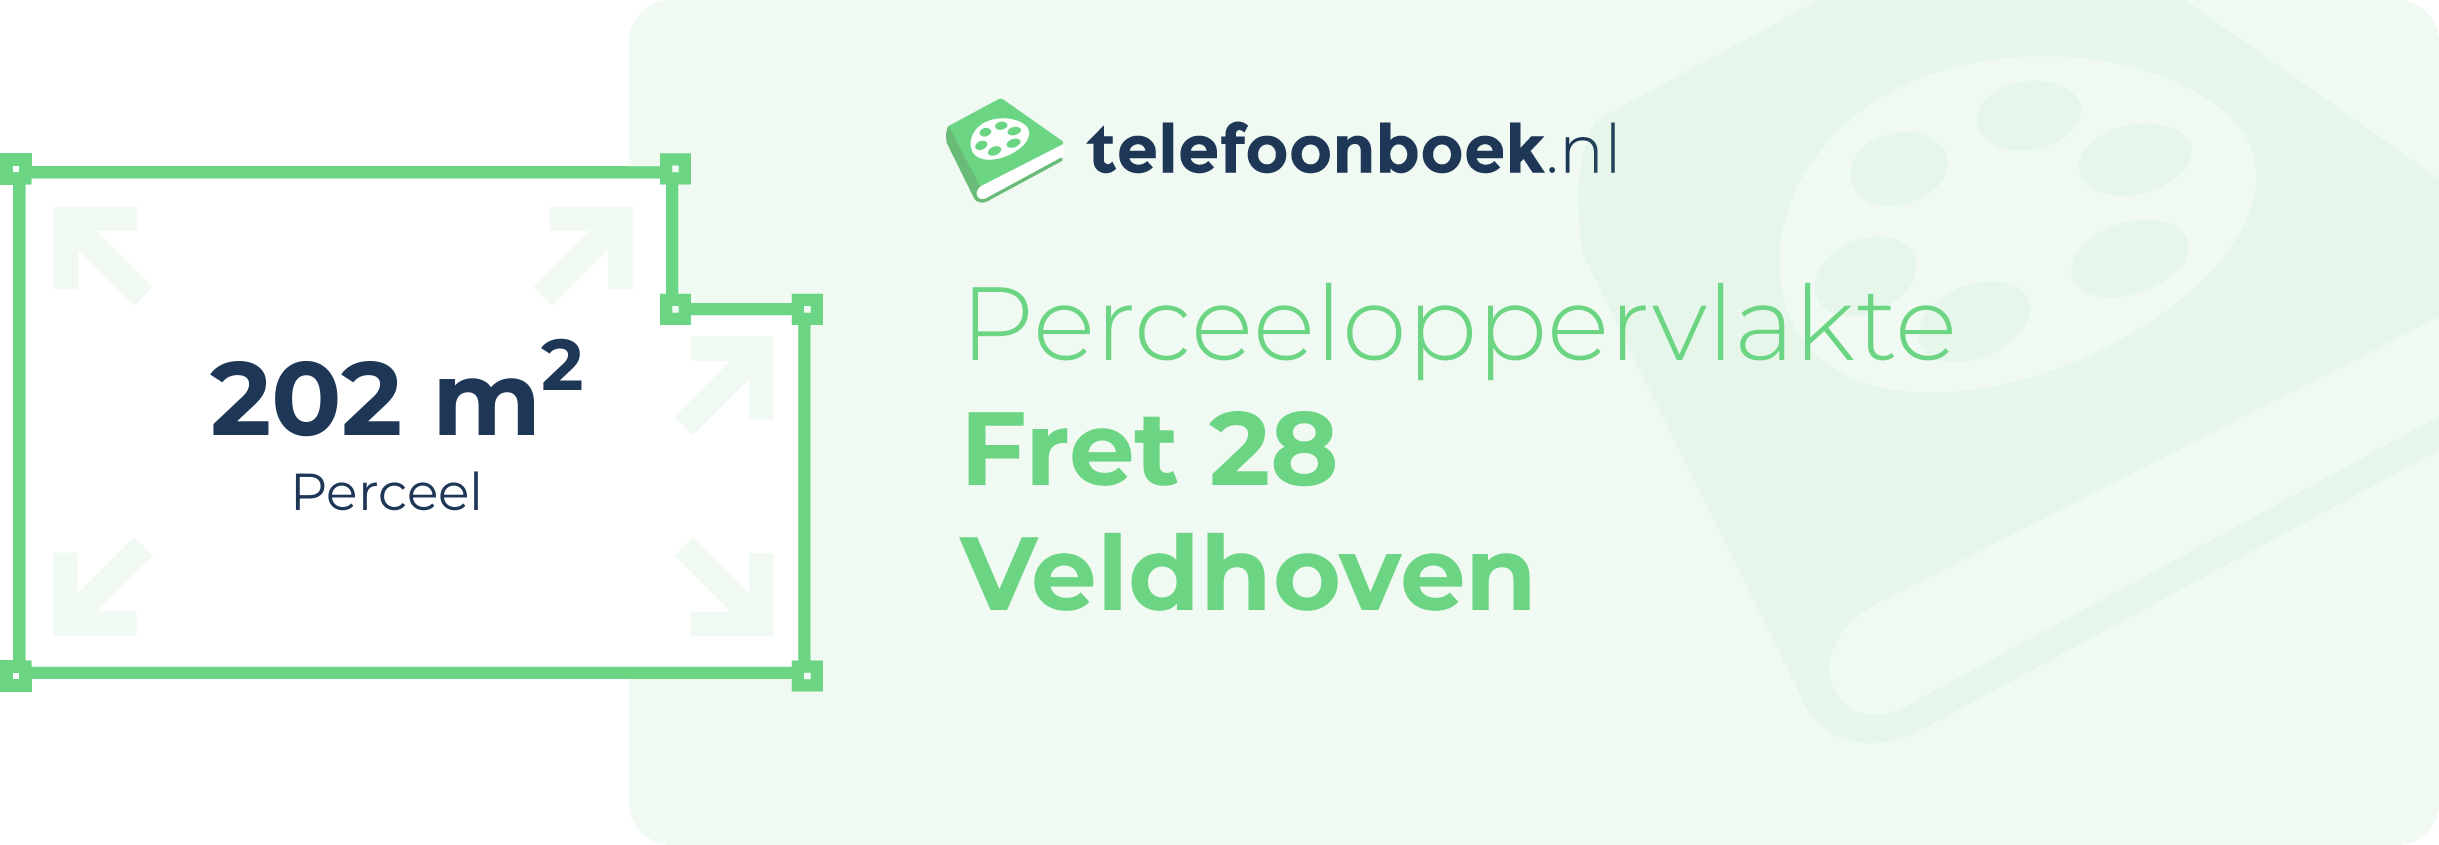 Perceeloppervlakte Fret 28 Veldhoven